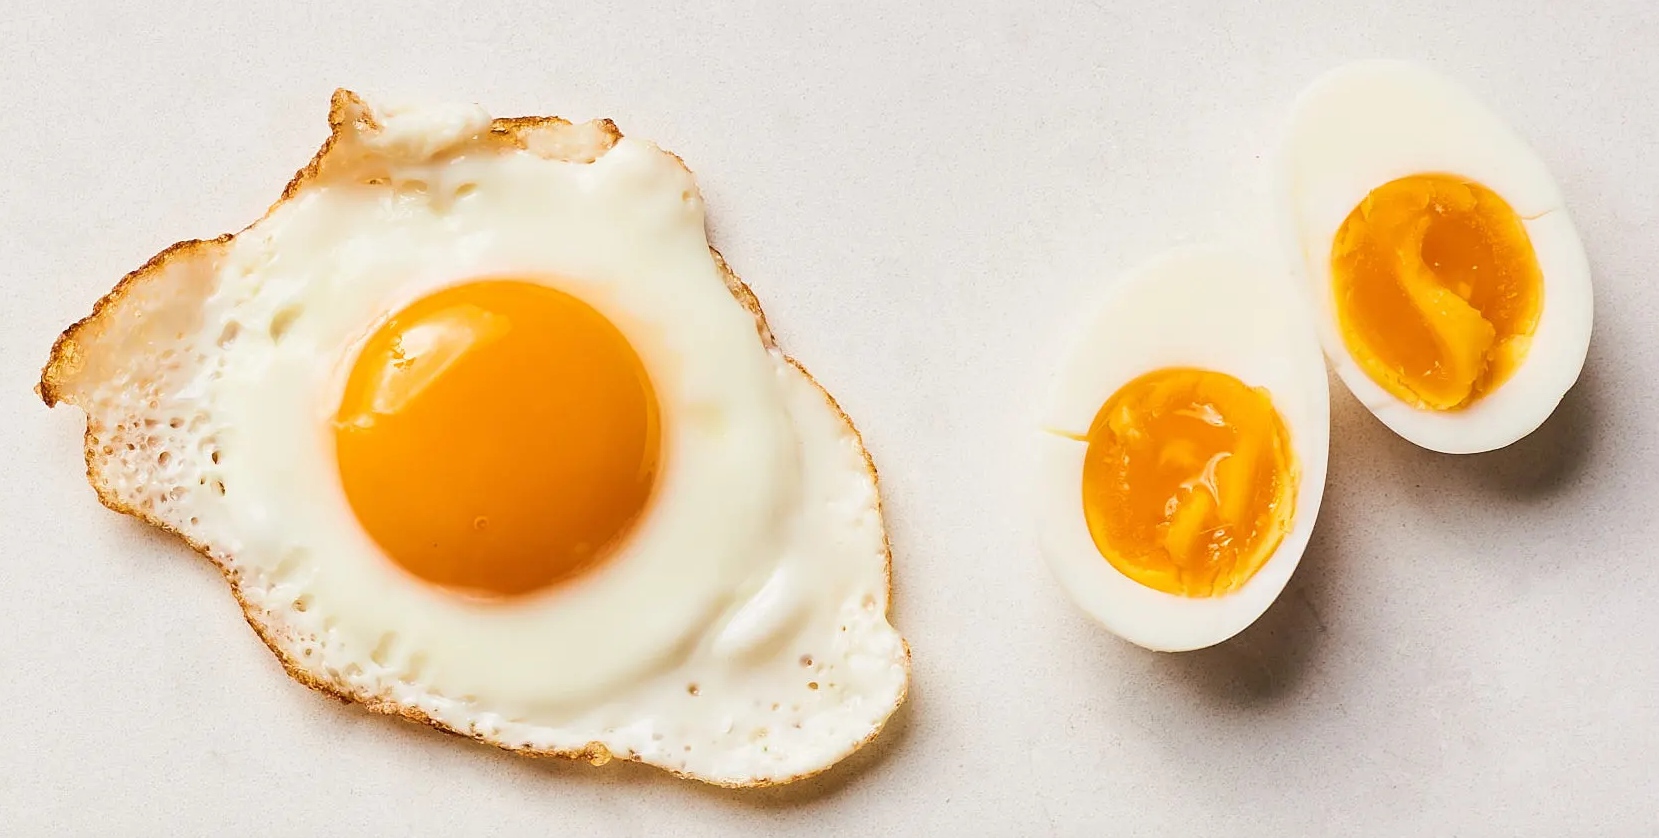 Μήπως μαγειρεύετε έτσι τα αυγά σας; – Δείτε γιατί πρέπει να το σταματήσετε